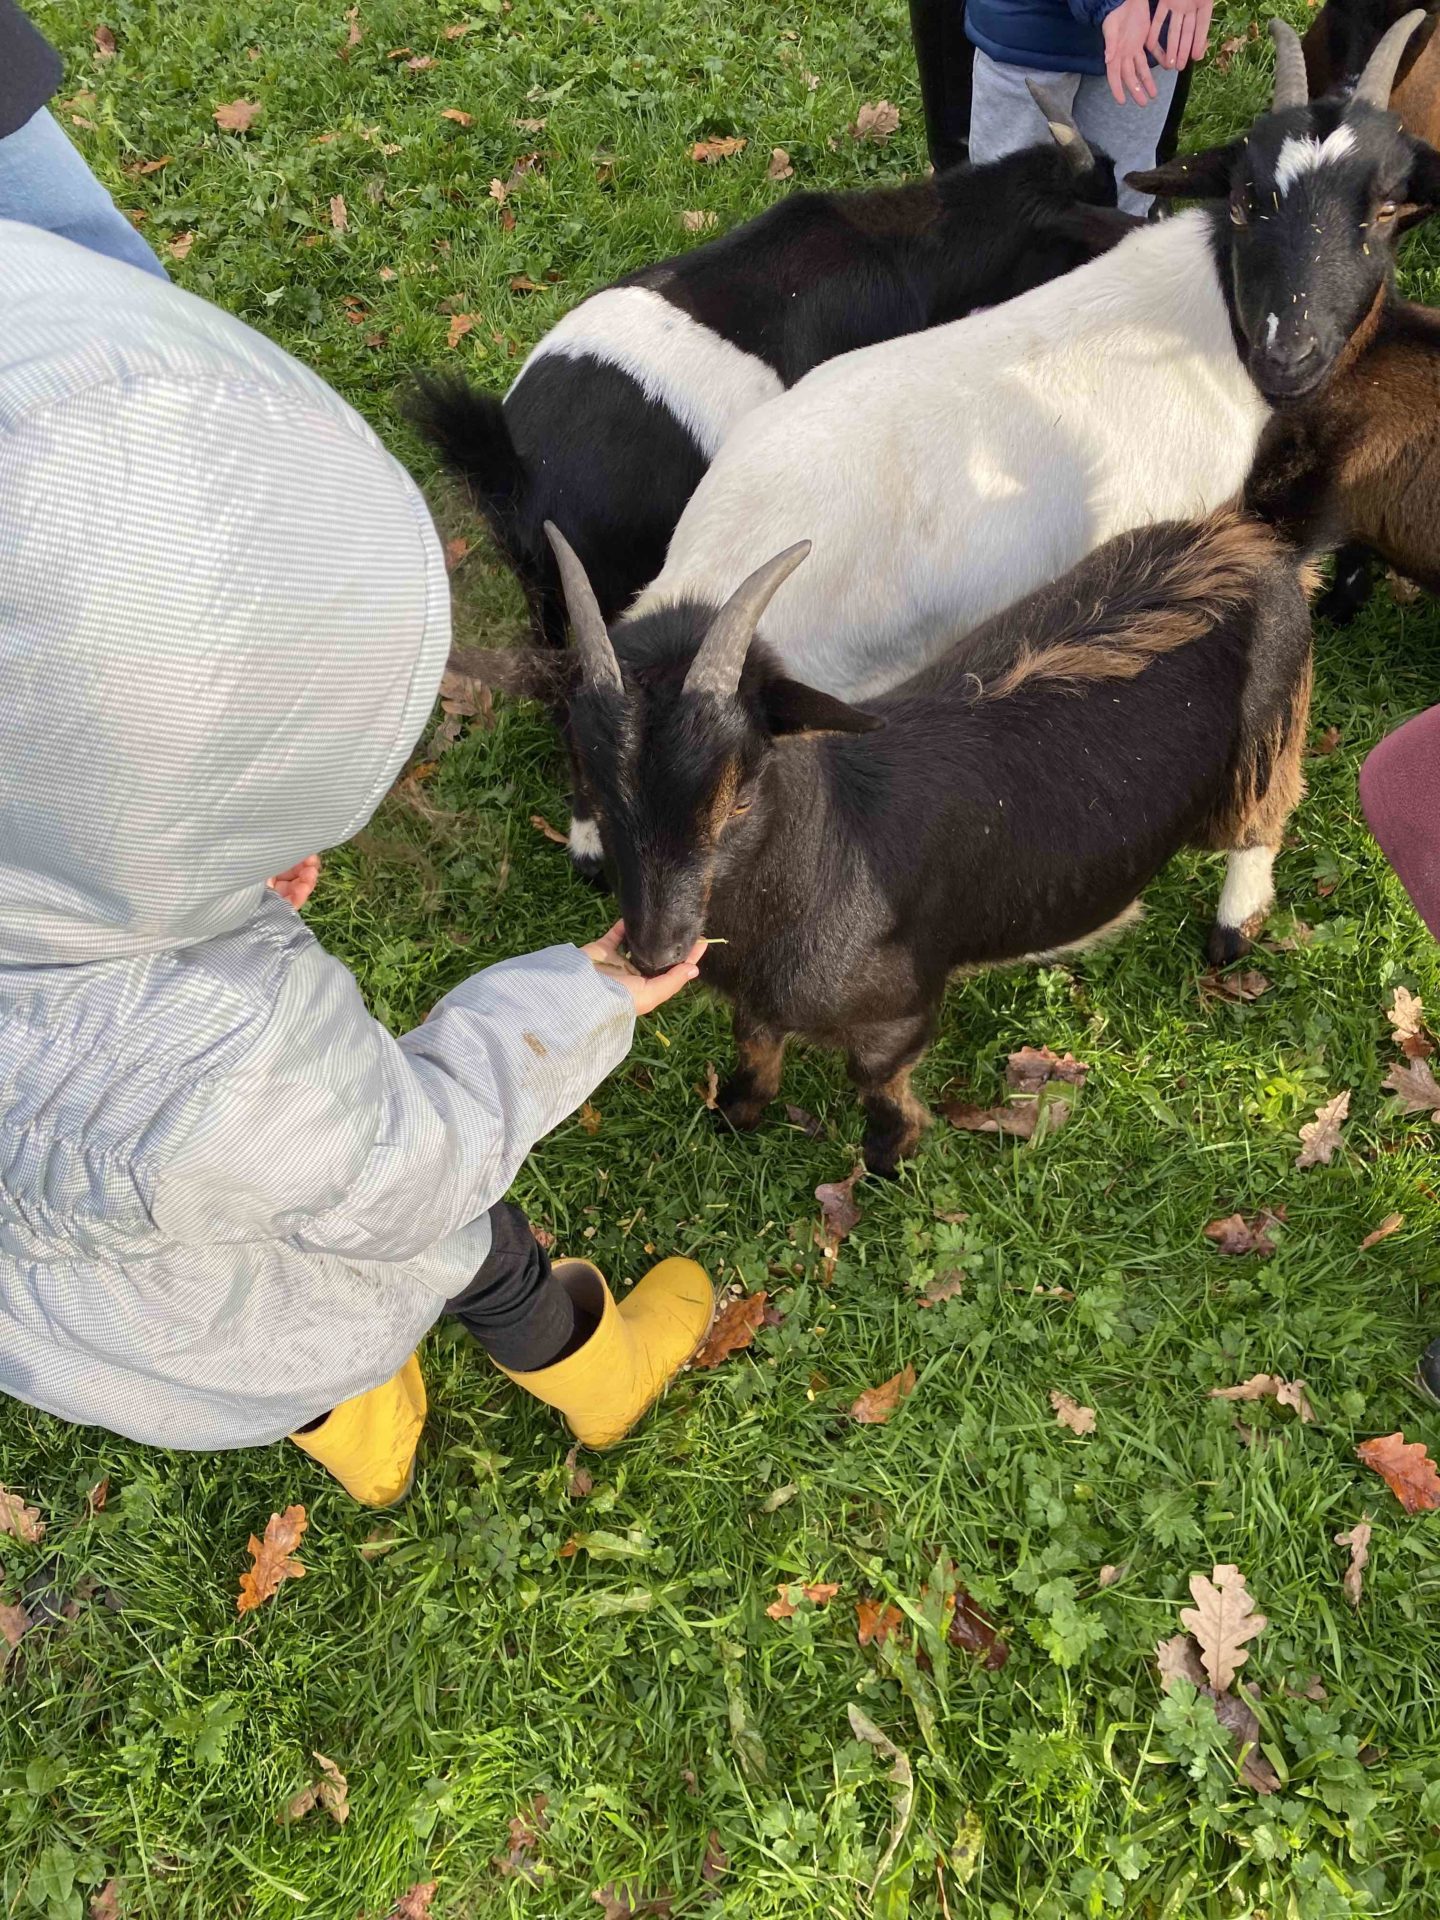 Le Domaine de Capucine visite à la ferme pédagogique normandie Caen deauville Cabourg chèvres